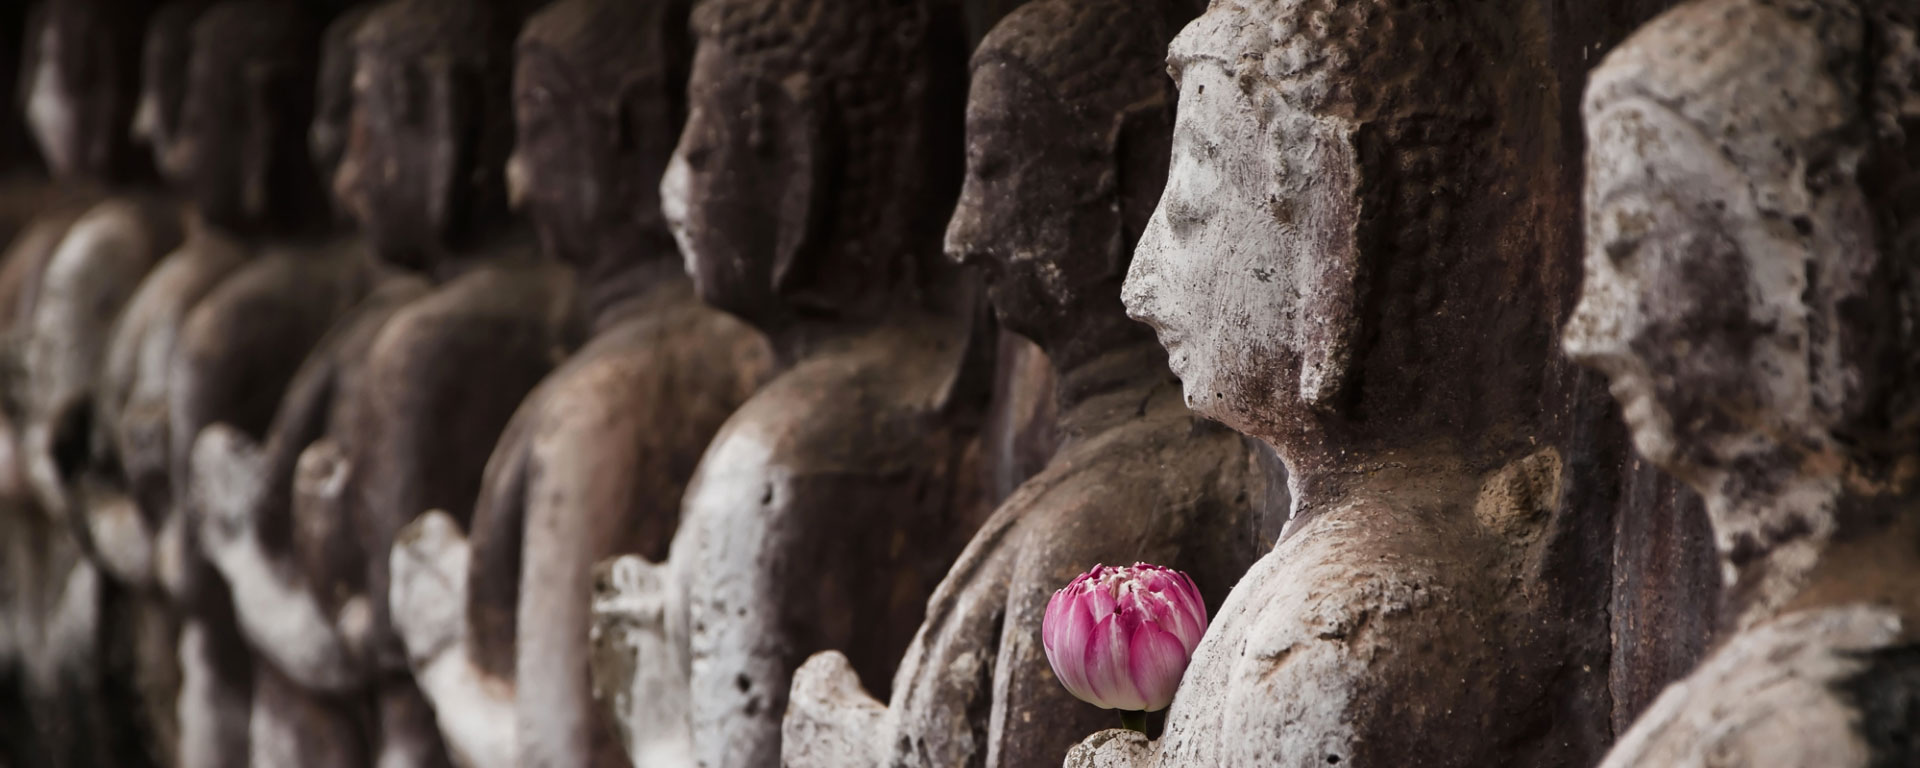 Rituals bild av buddha statyer